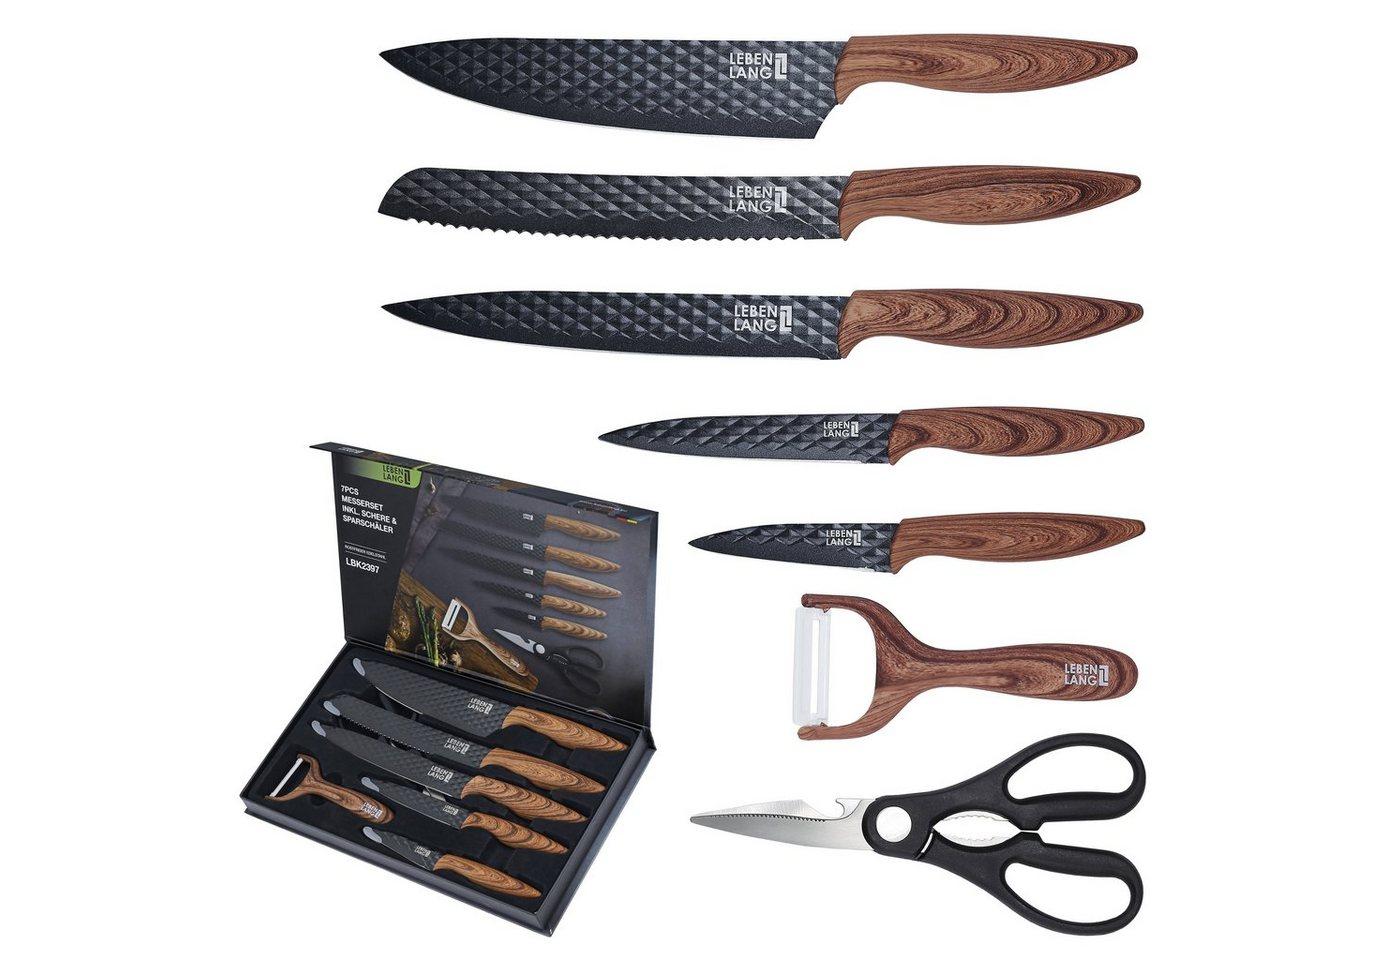 Lebenlang Messer-Set Küchen Zubehör Messerset 7 Teilig Küchenmesser Set (Inkl. hochwertiger Geschenkverpackung)